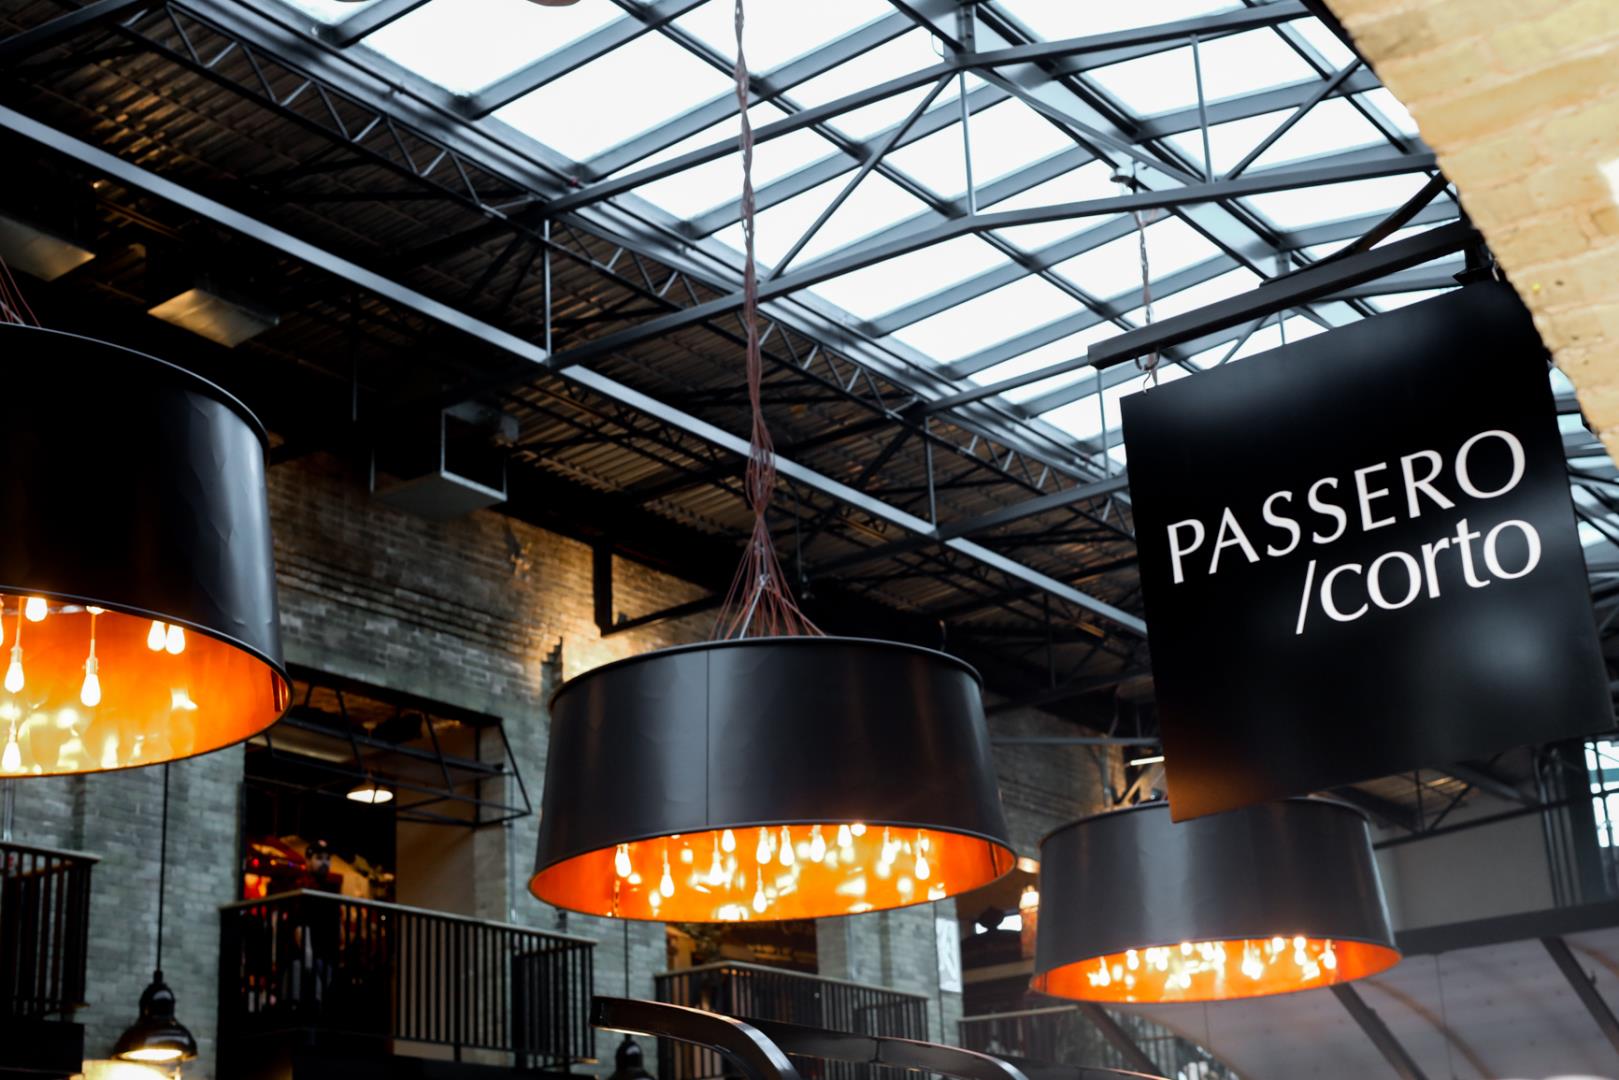 Passero Restaurant - Picture